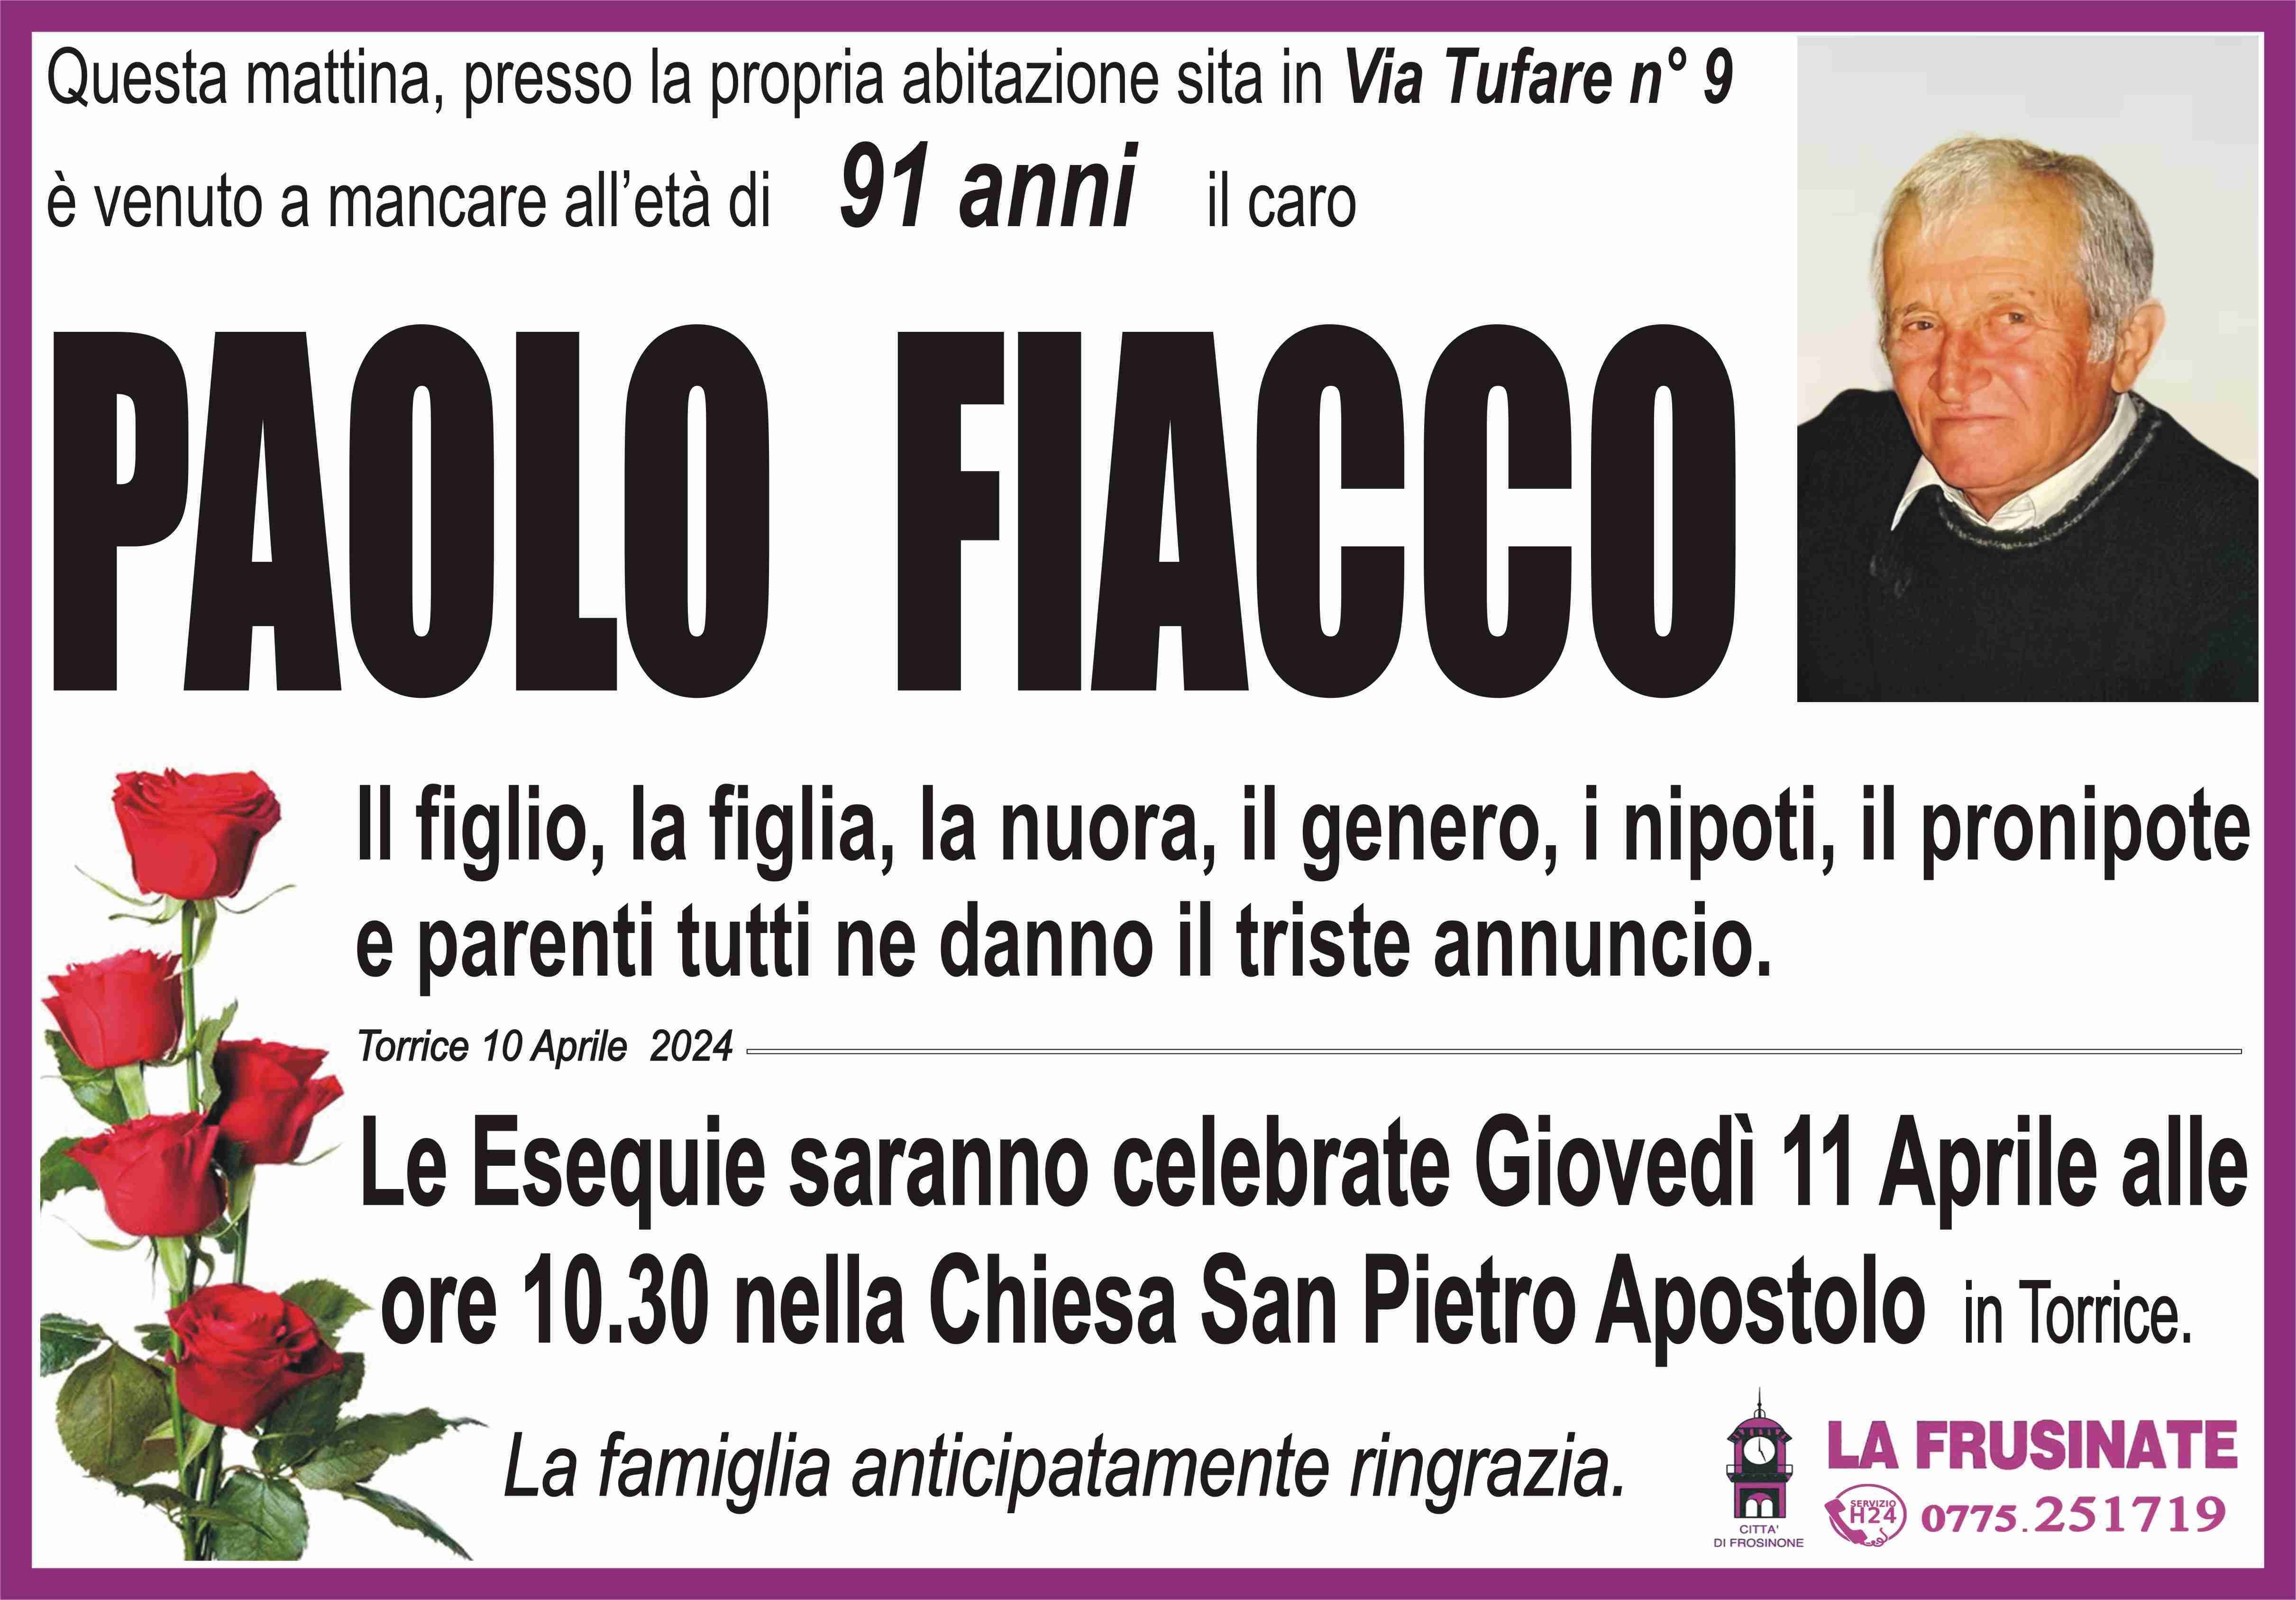 Paolo Fiacco